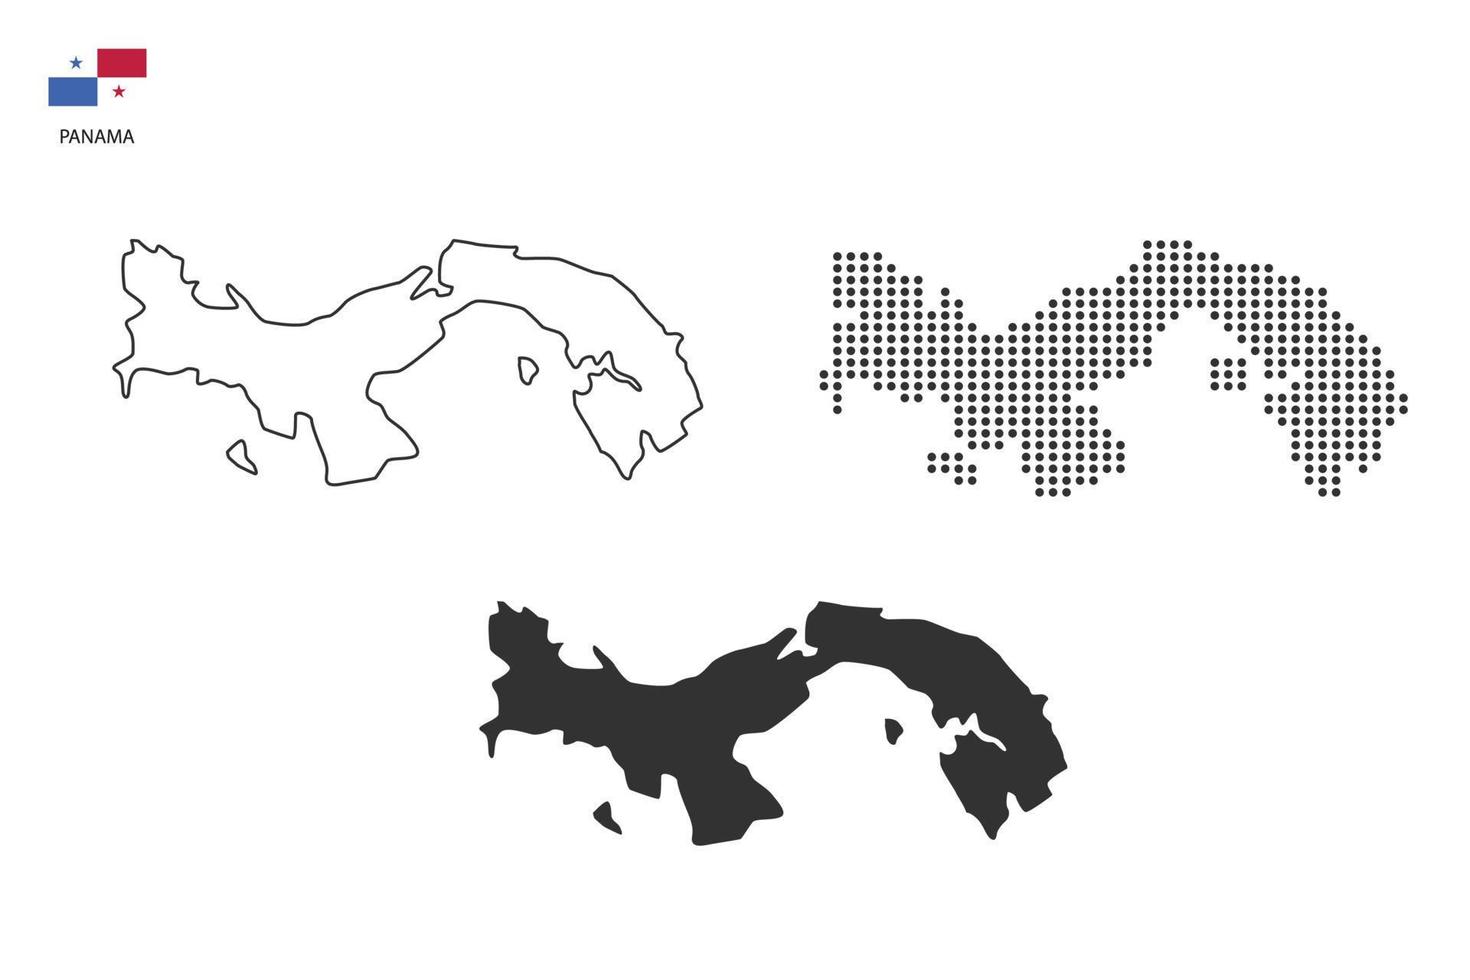 3 versões do vetor da cidade do mapa do Panamá por estilo de simplicidade de contorno preto fino, estilo de ponto preto e estilo de sombra escura. tudo no fundo branco.